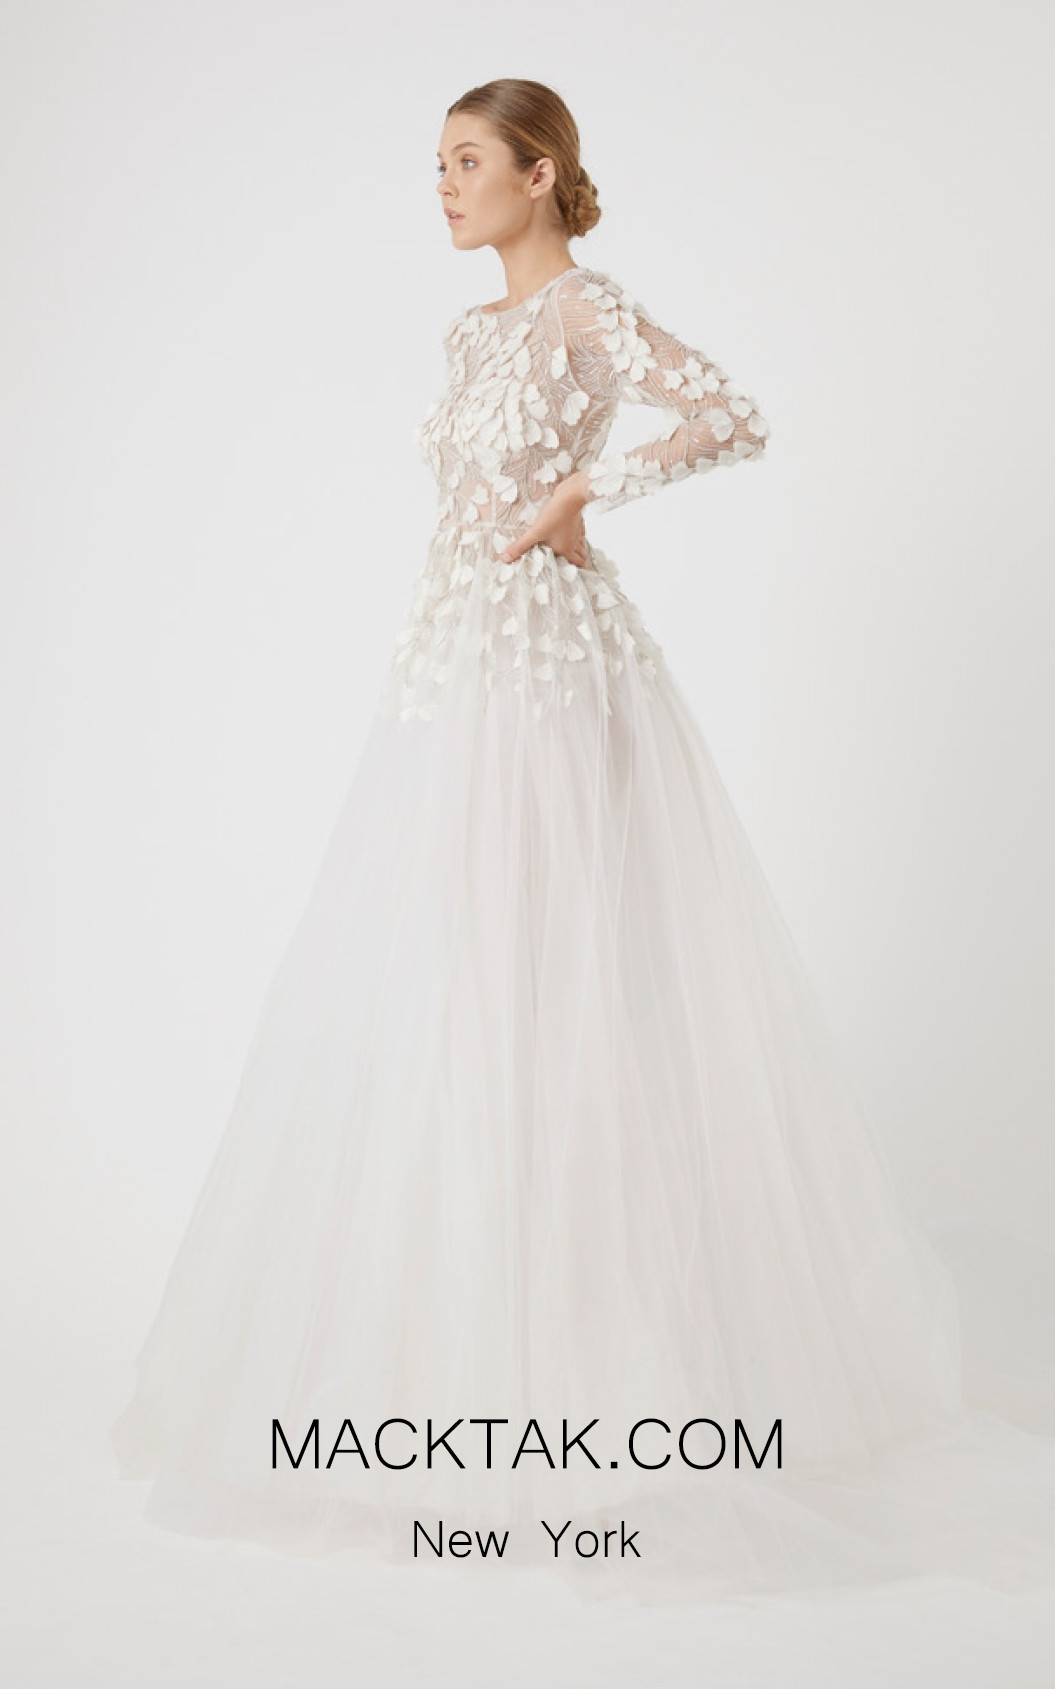 rachel gilbert wedding dress for sale